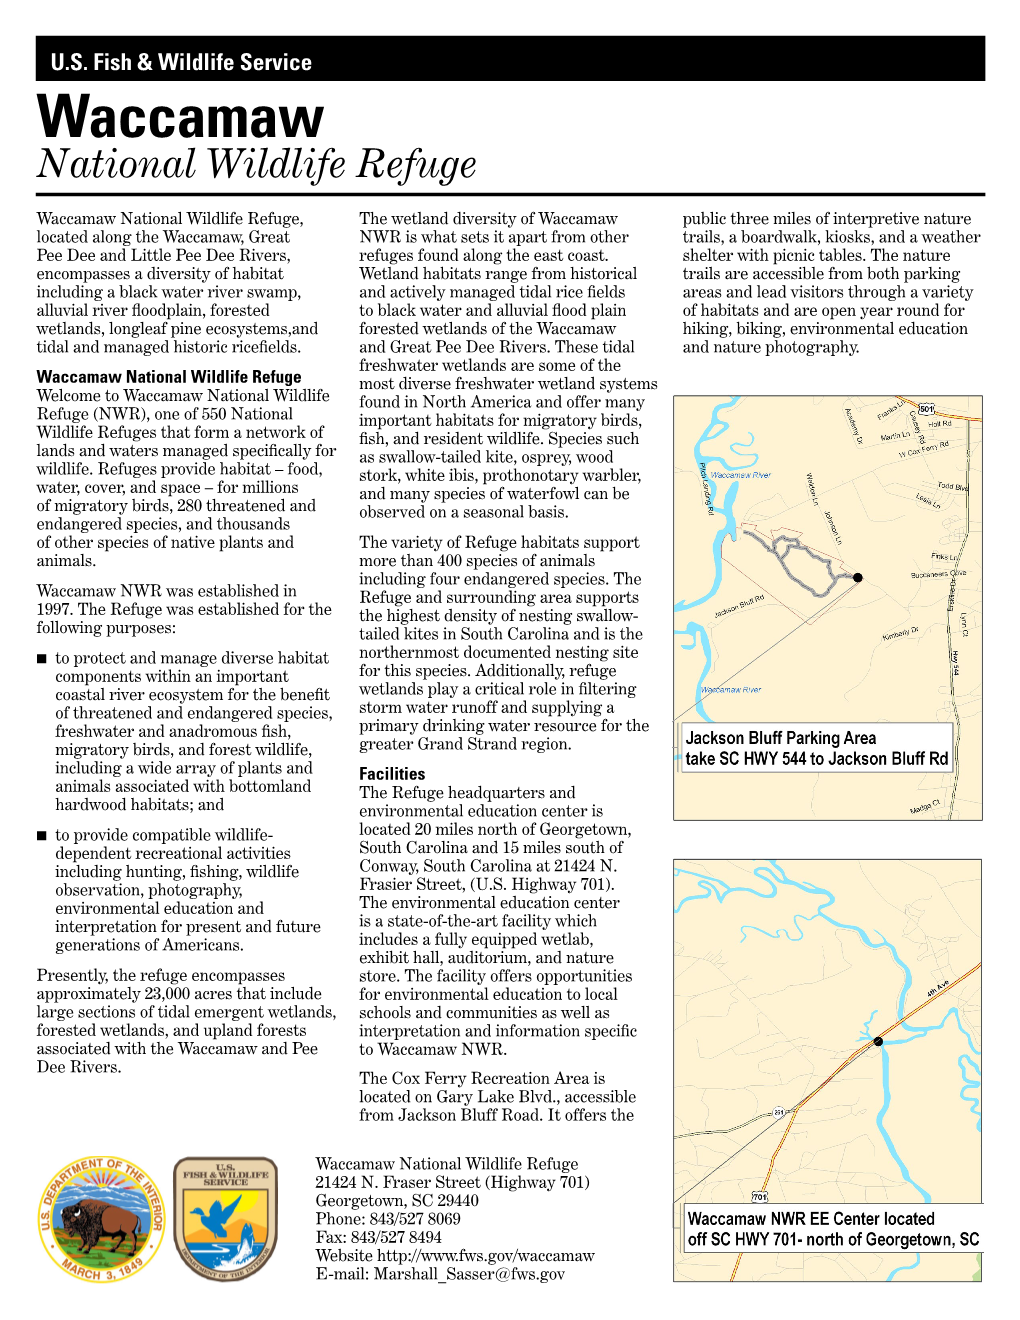 Waccamaw National Wildlife Refuge